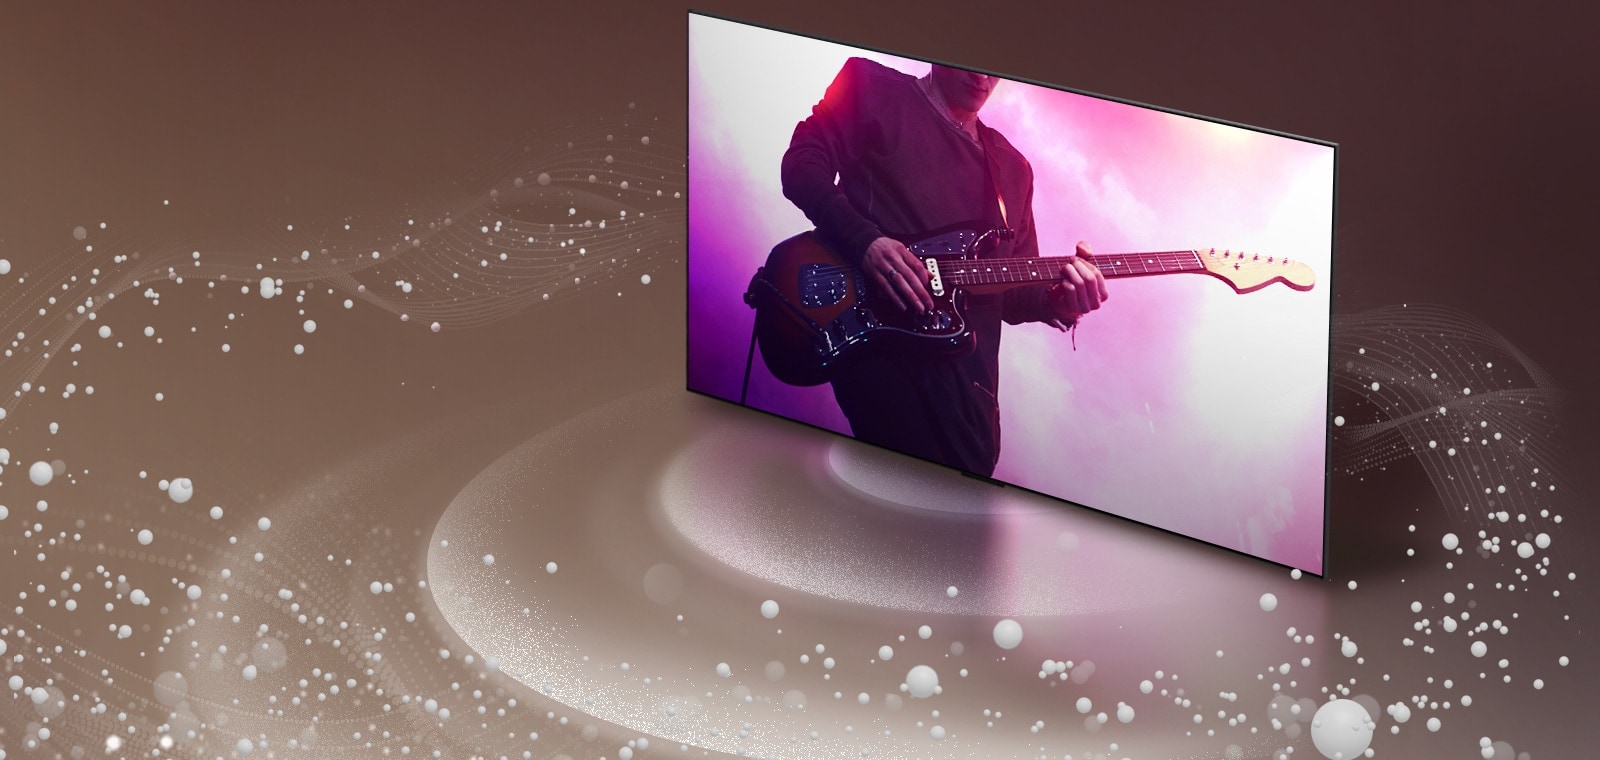 LG OLED TV z zvočnimi mehurčki in valovi, ki prihajajo iz zaslona in polnijo prostor.